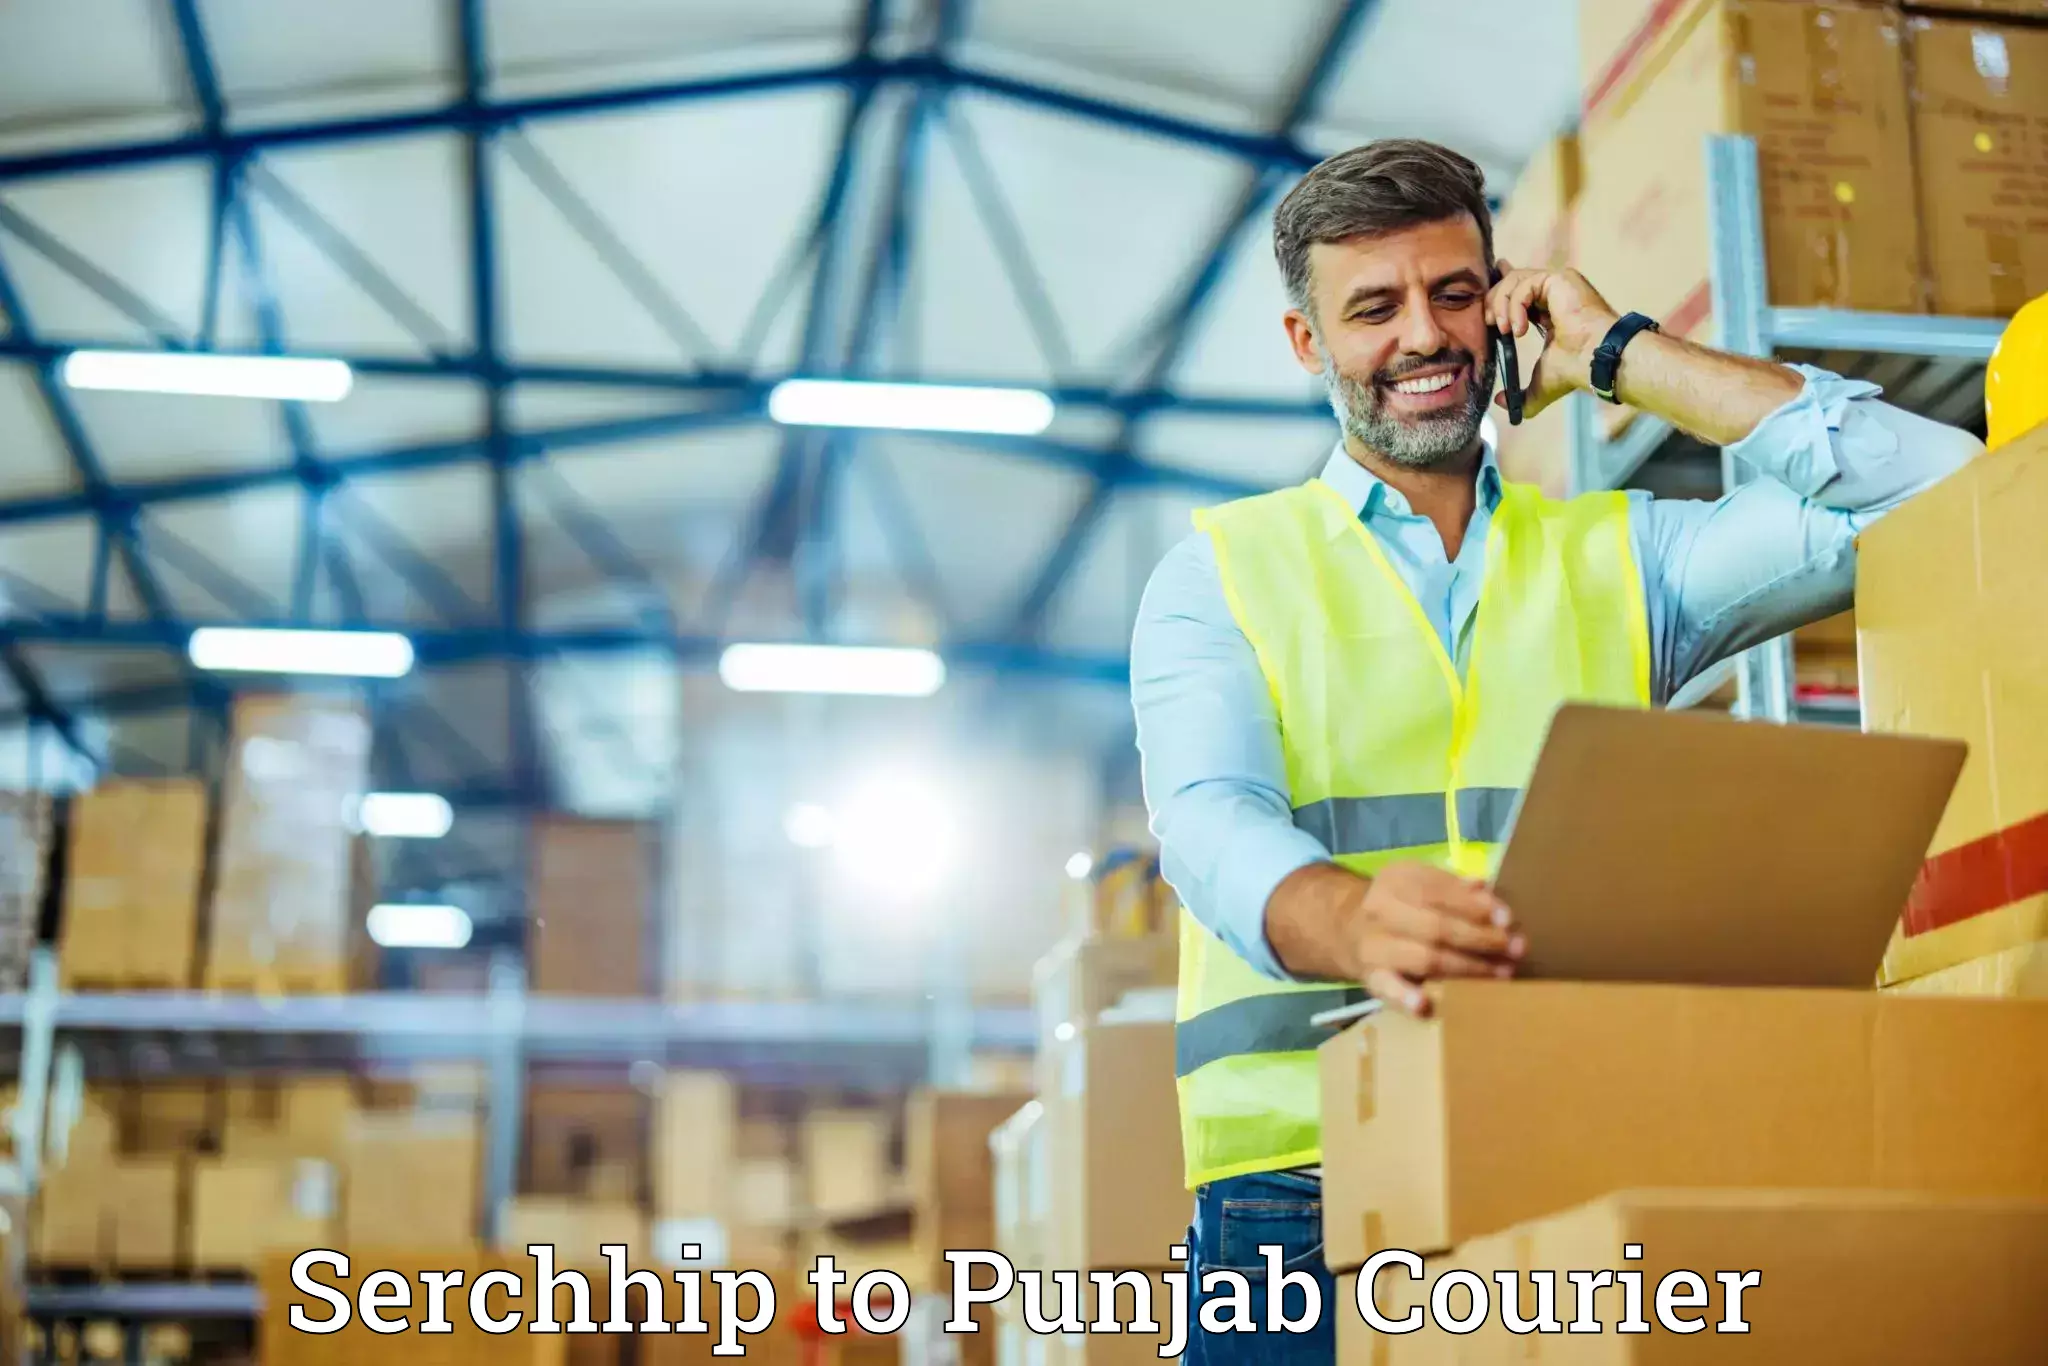 Easy furniture transport Serchhip to Punjab